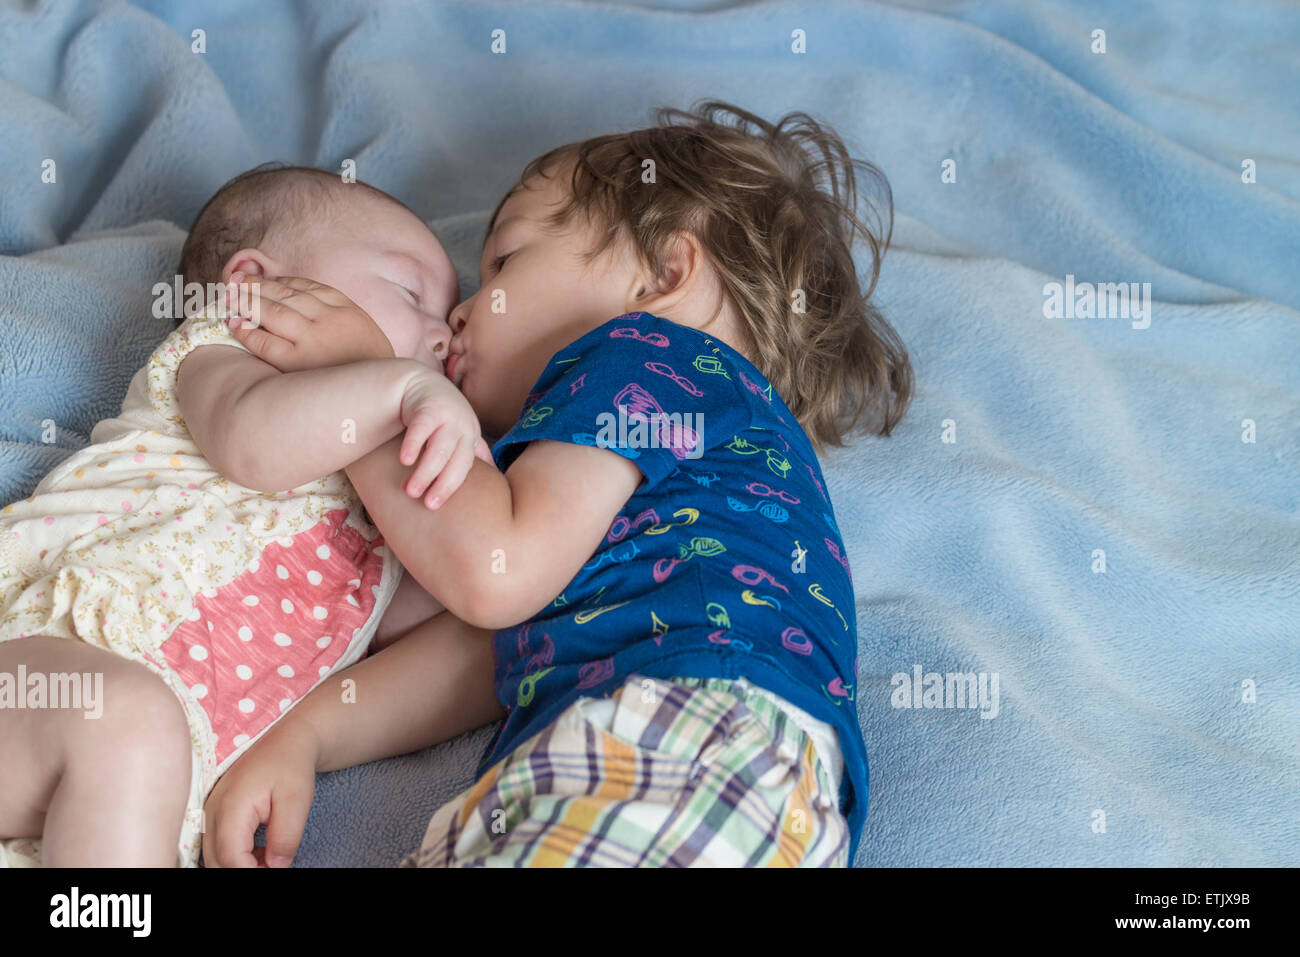 Un niño de 2 años, y su hermana recién nacida acostado en una cama. Foto de stock